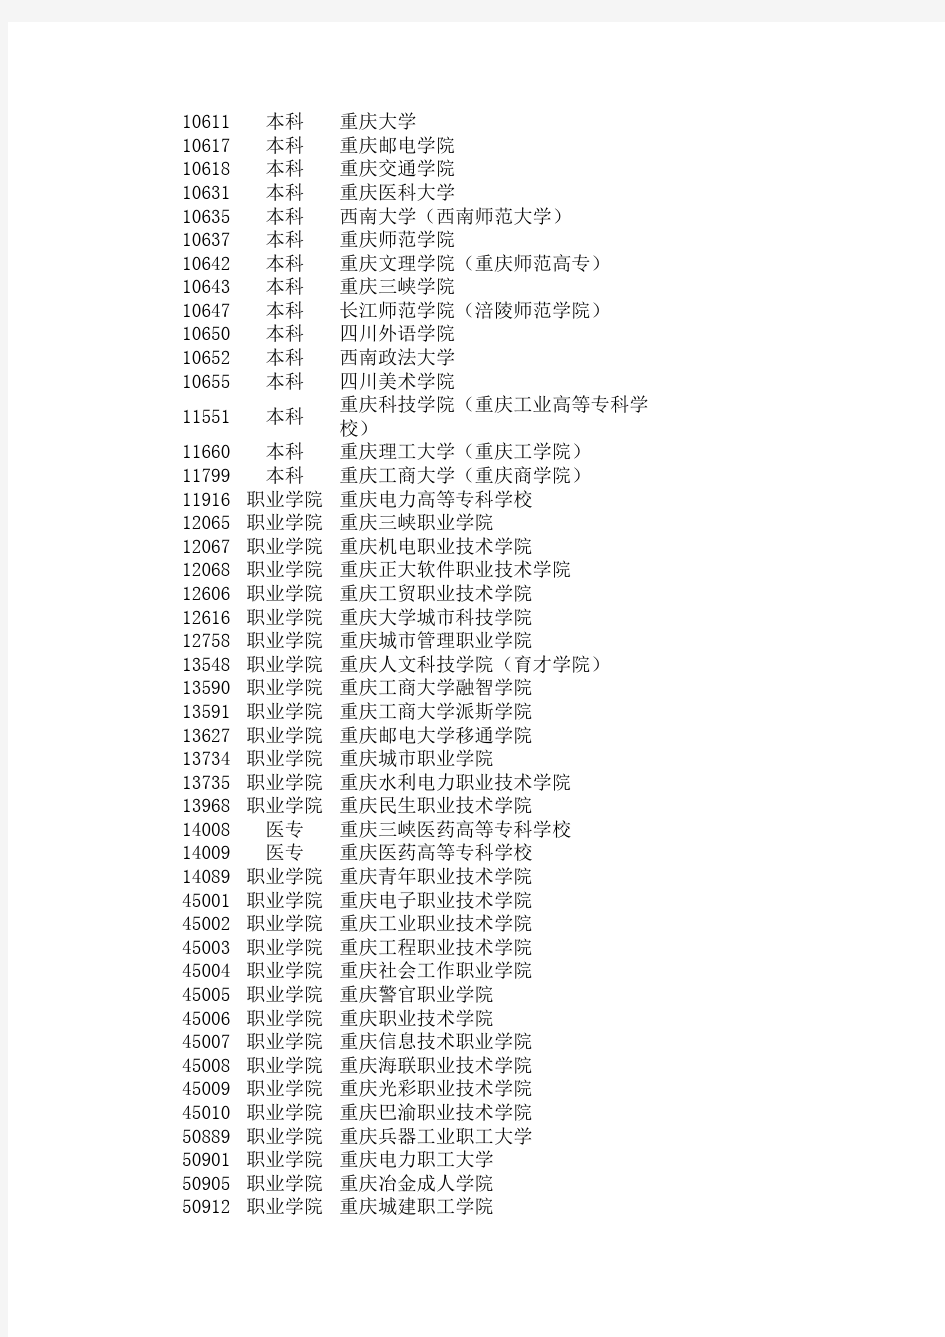 重庆地区的高校名单及代码